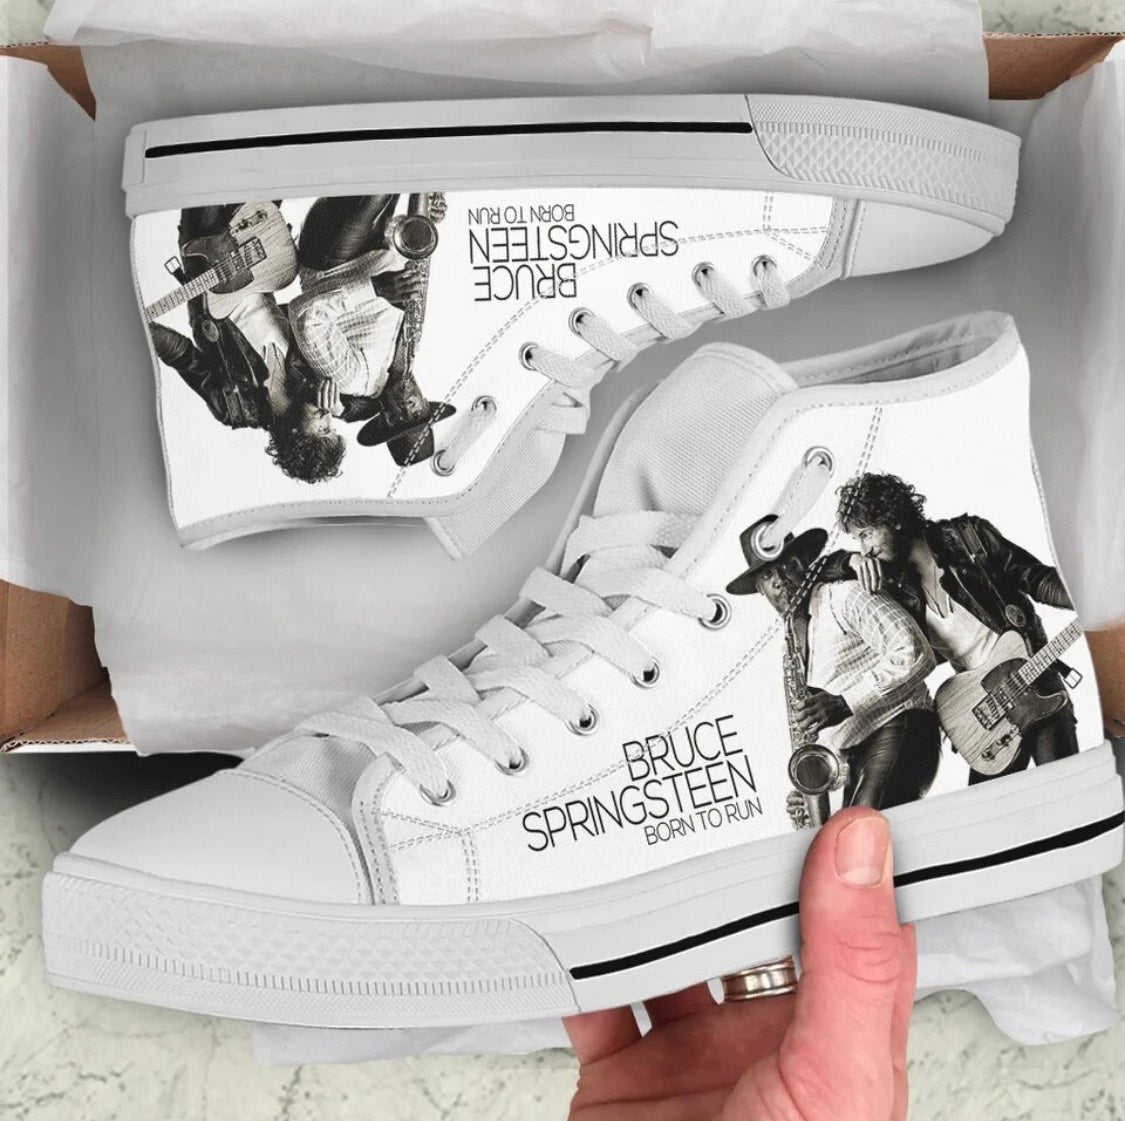 Bruce Springsteen shoes – Bornrocker Brand